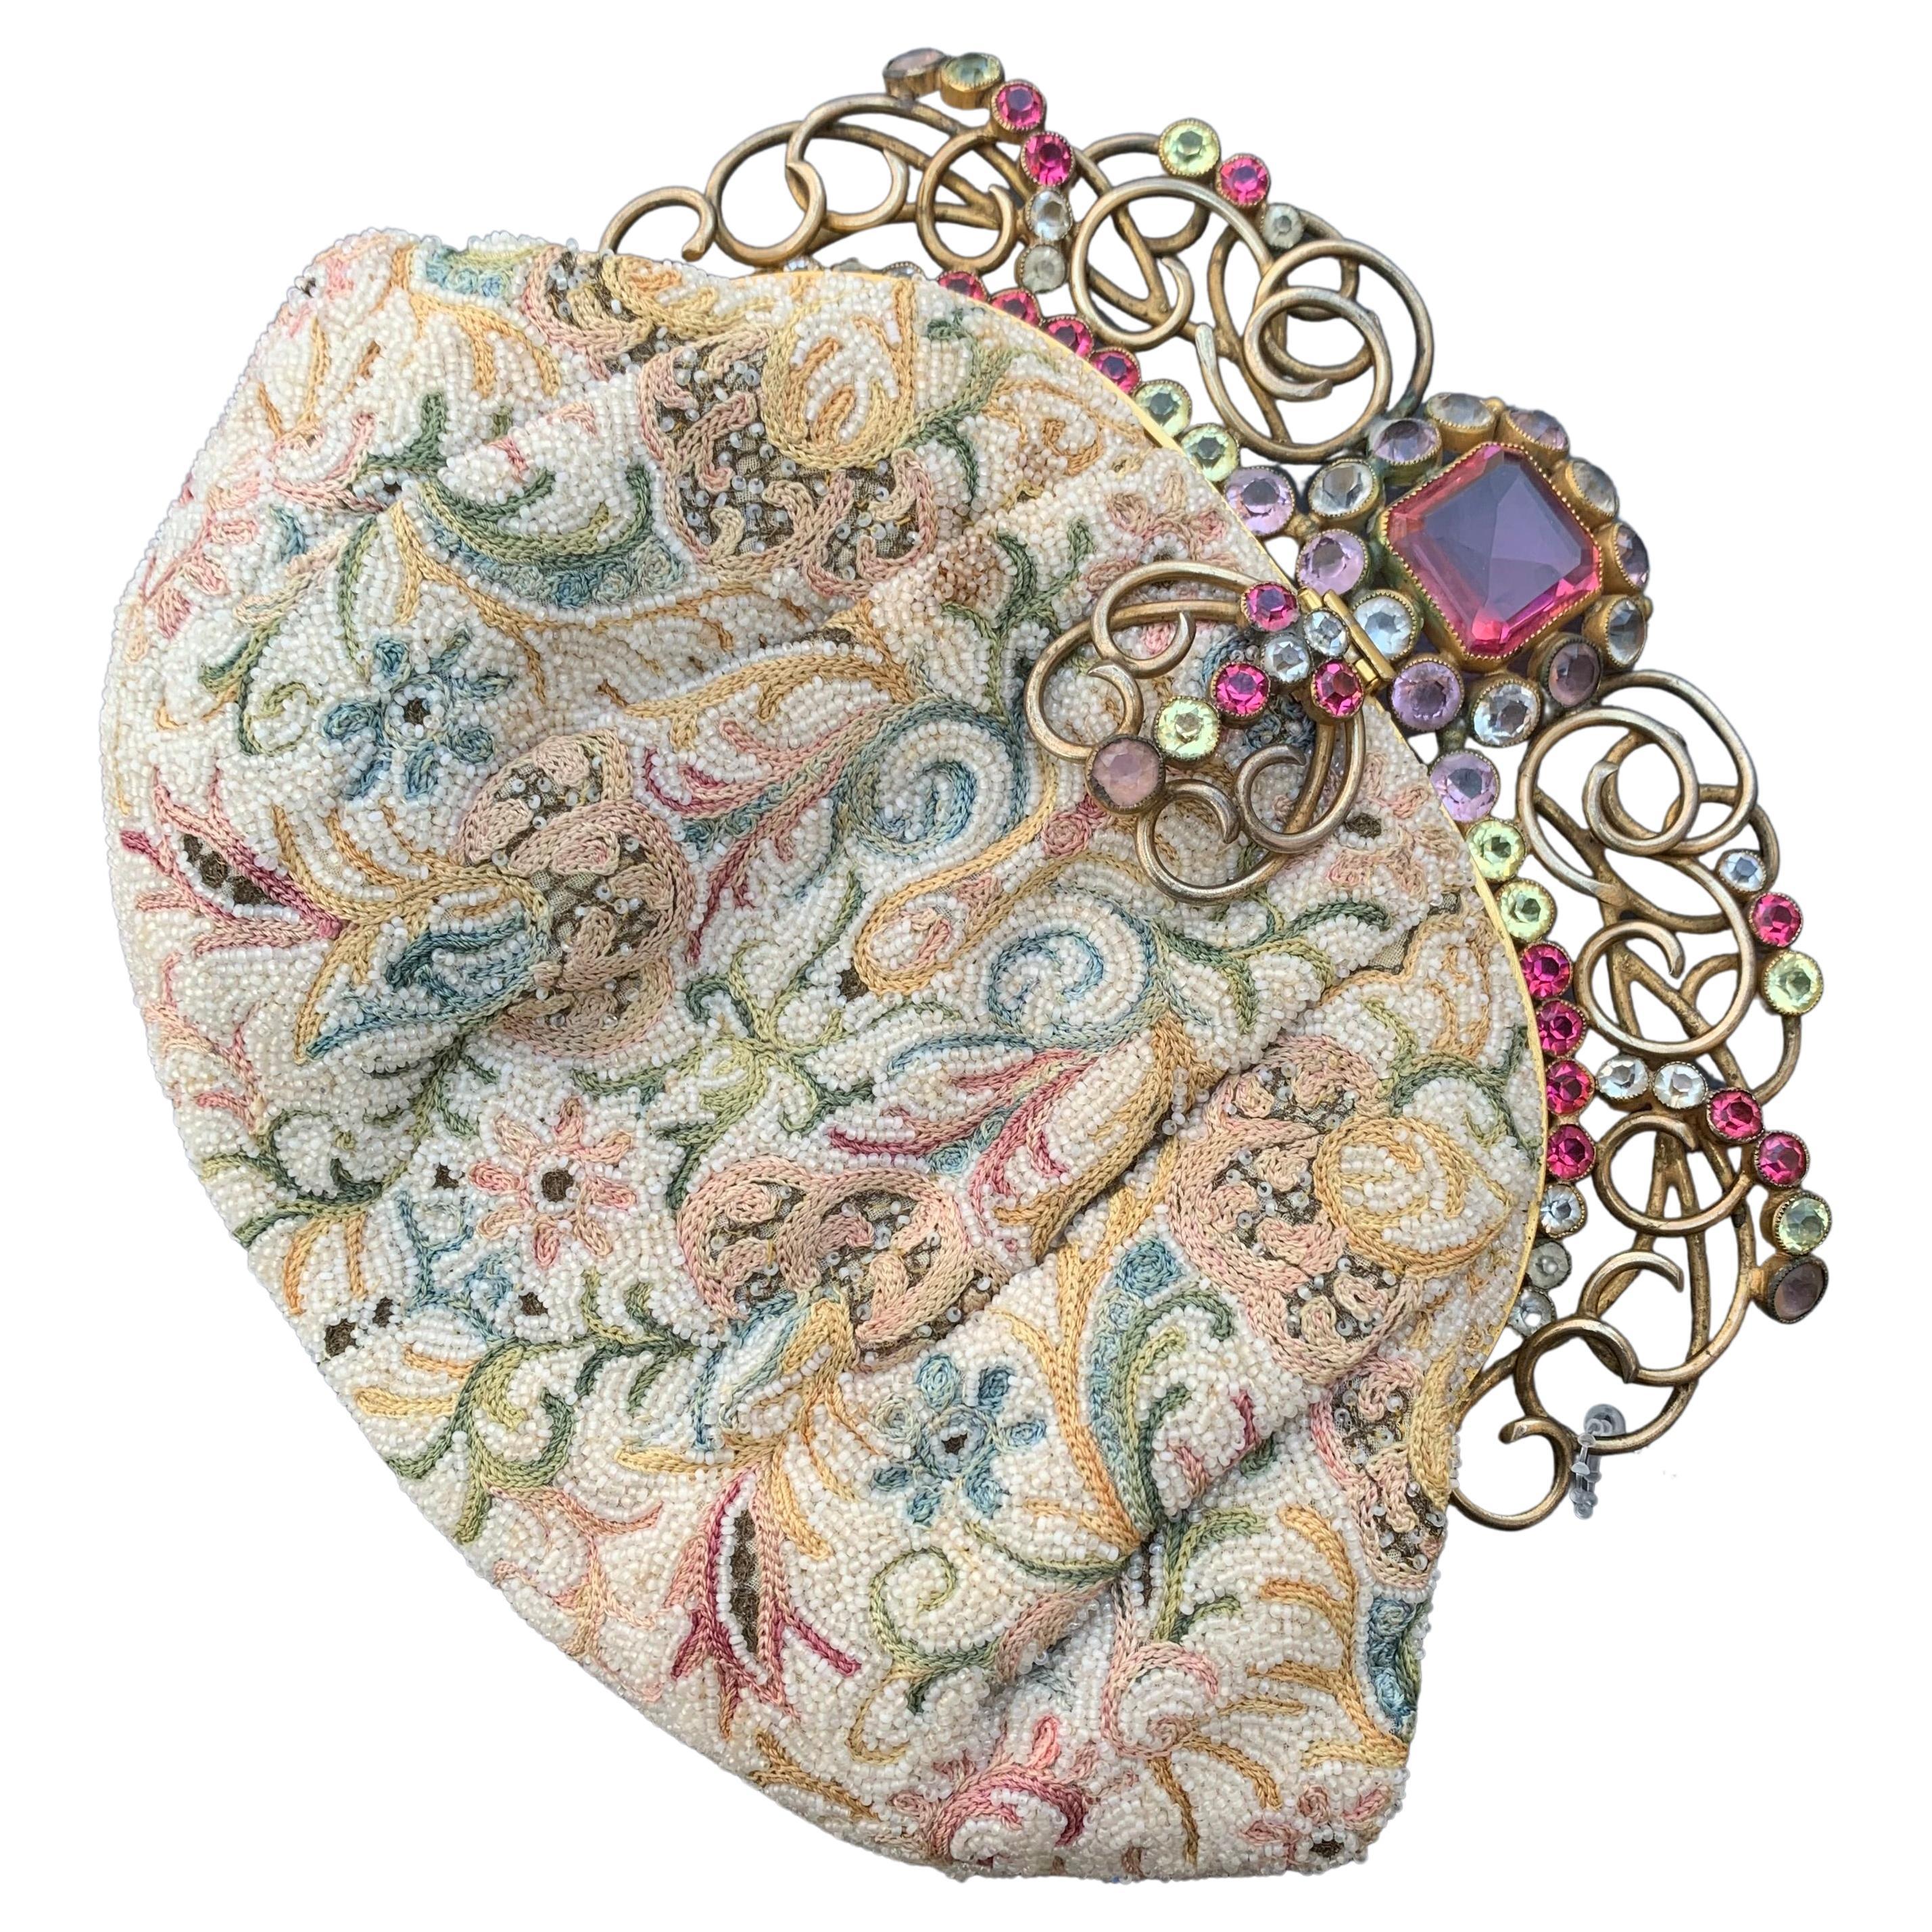 Josef Embroidery Hand Beaded Purse Handbag Jeweled Frame USA